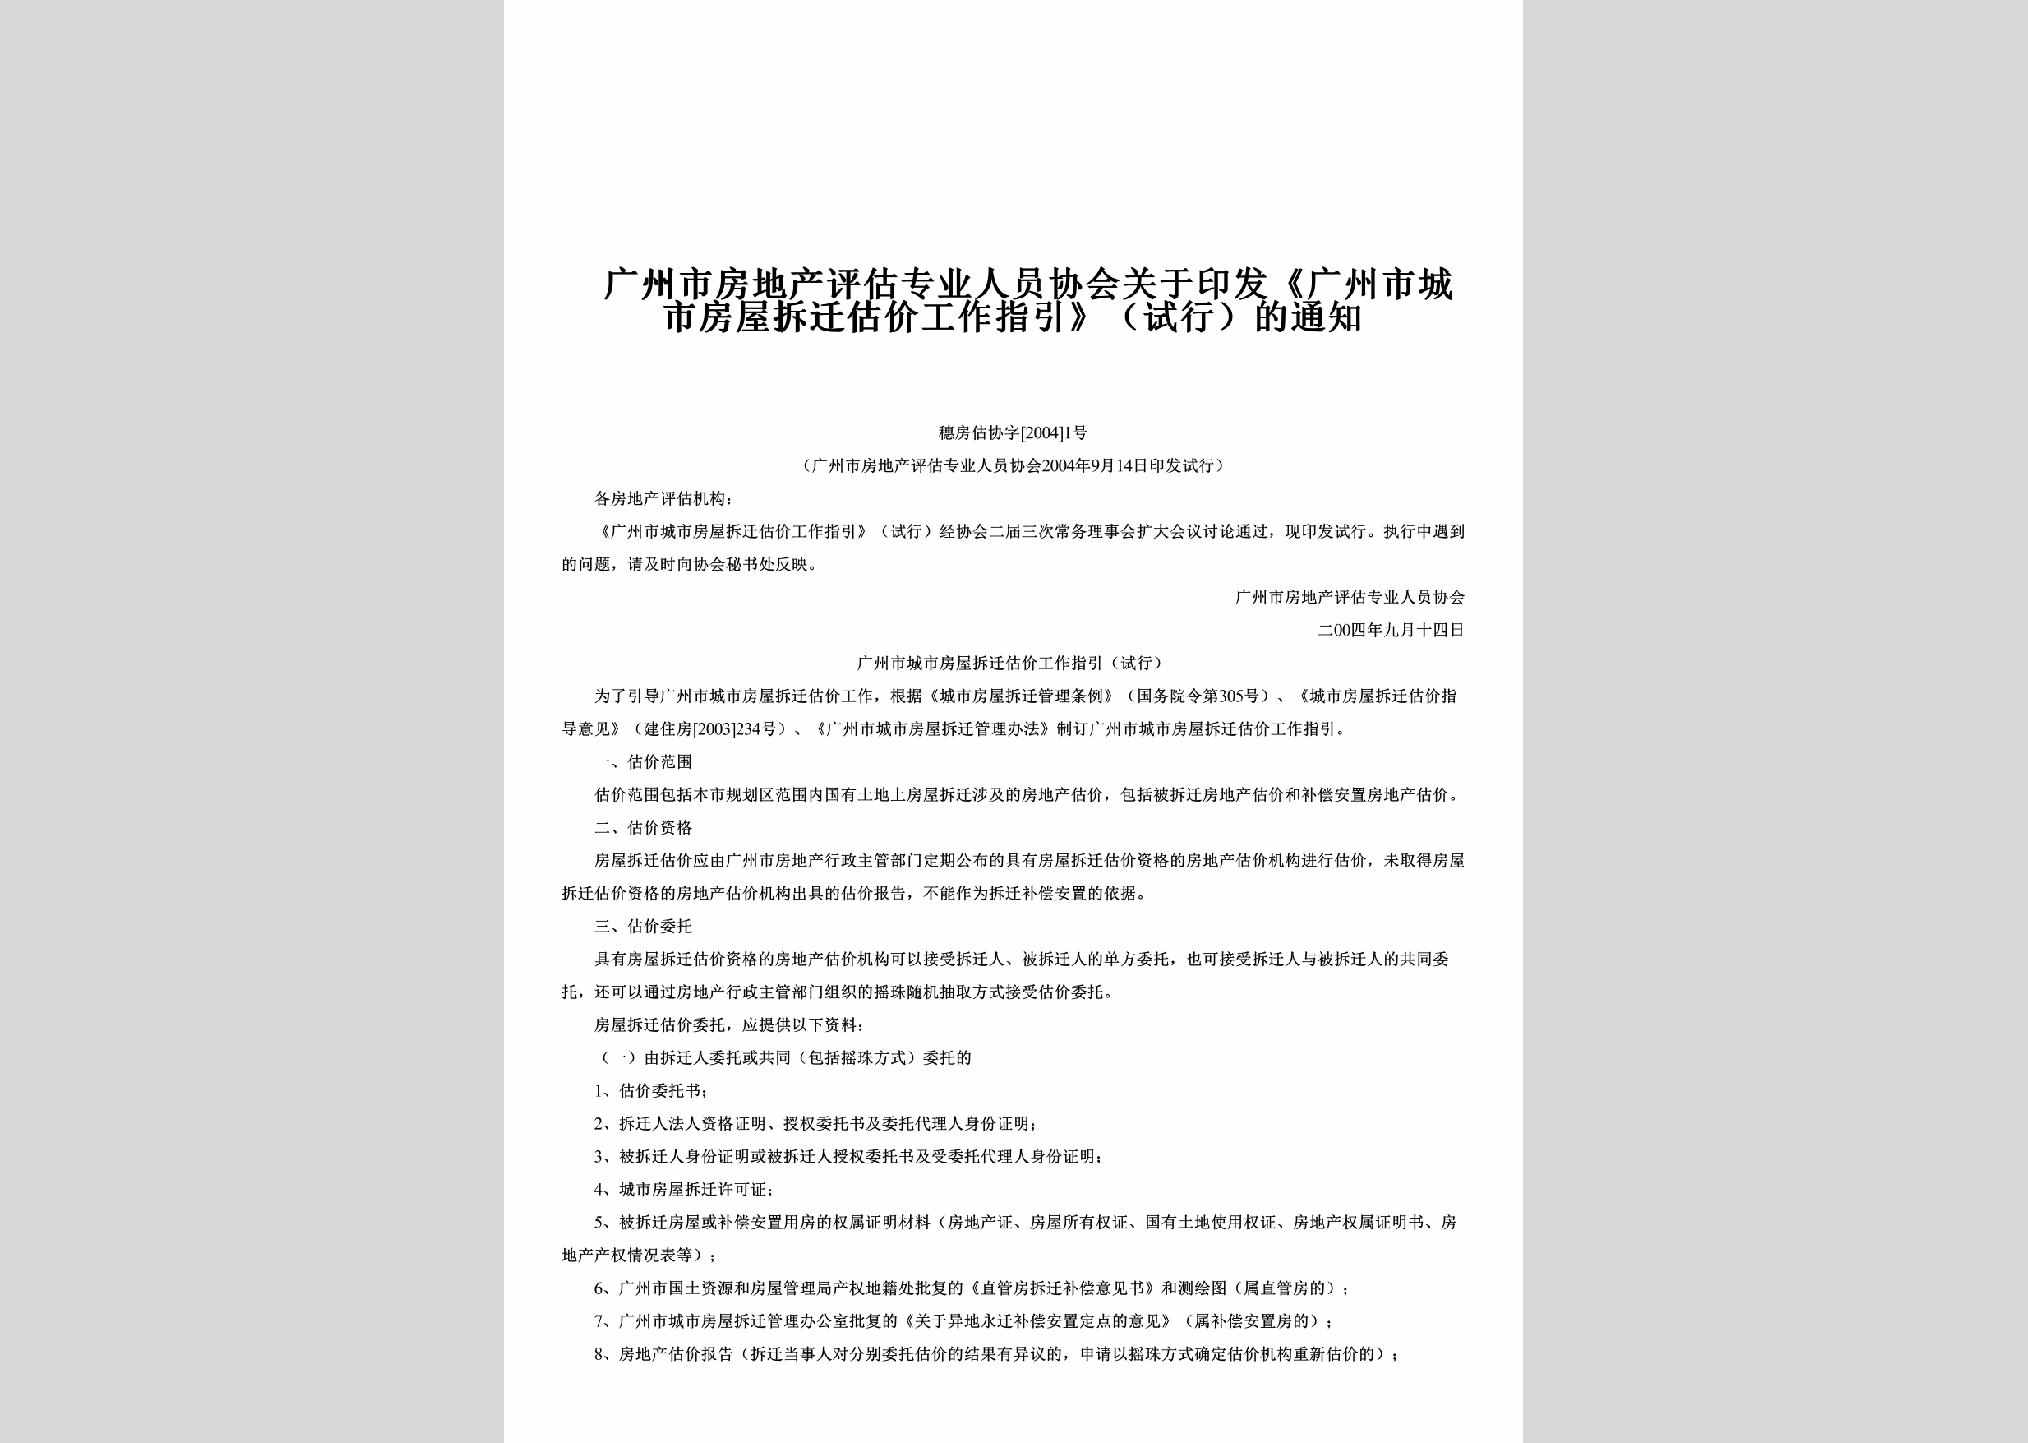 穗房估协字[2004]1号：关于印发《广州市城市房屋拆迁估价工作指引》（试行）的通知